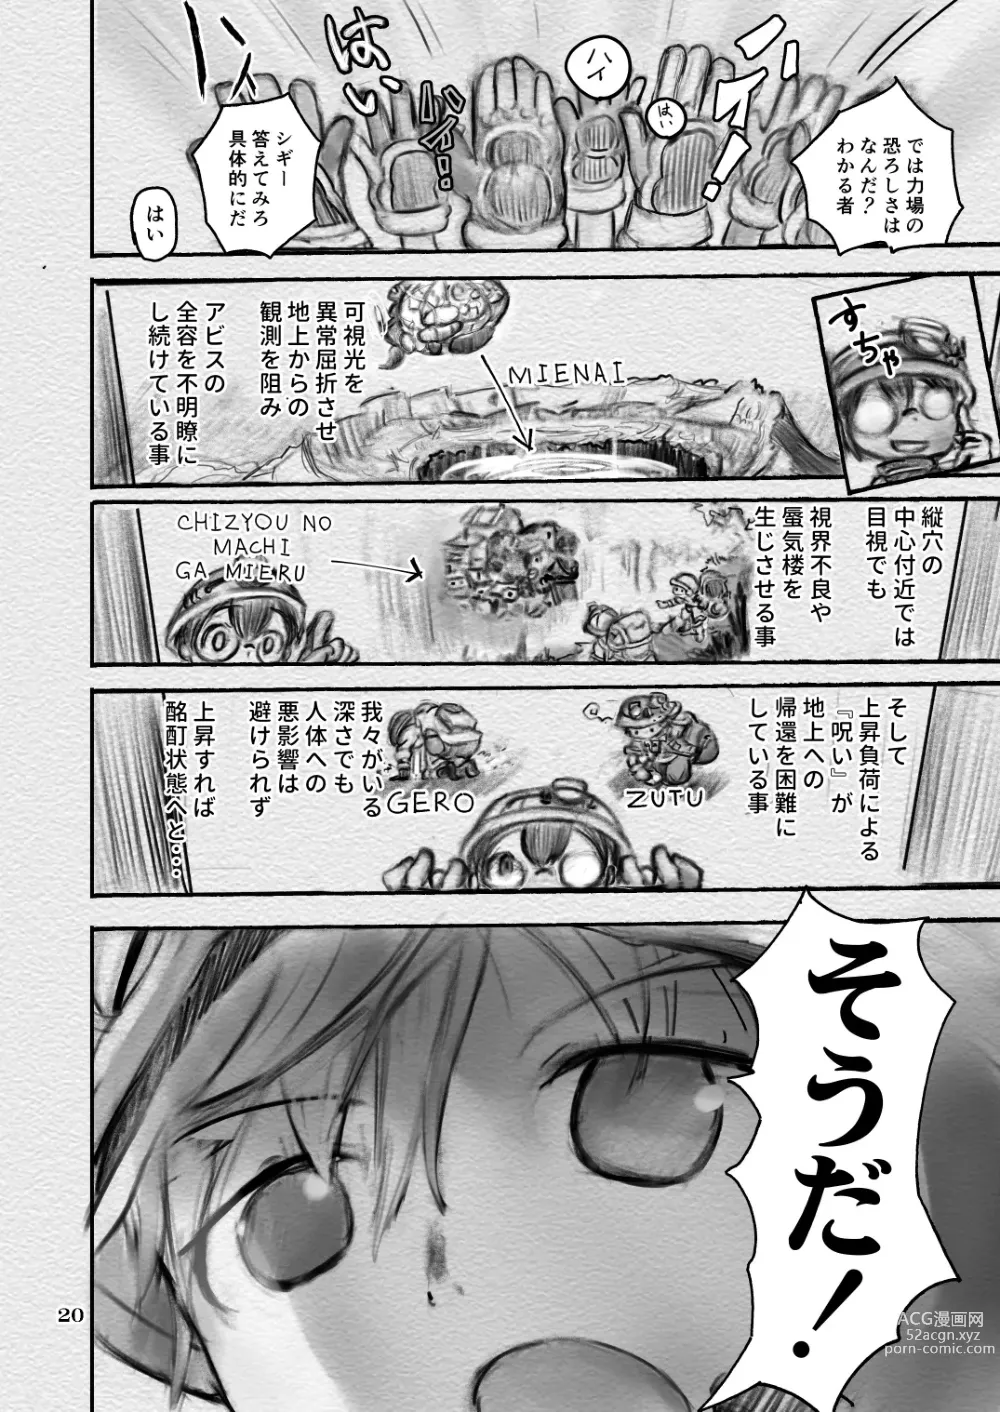 Page 20 of doujinshi Sakubun